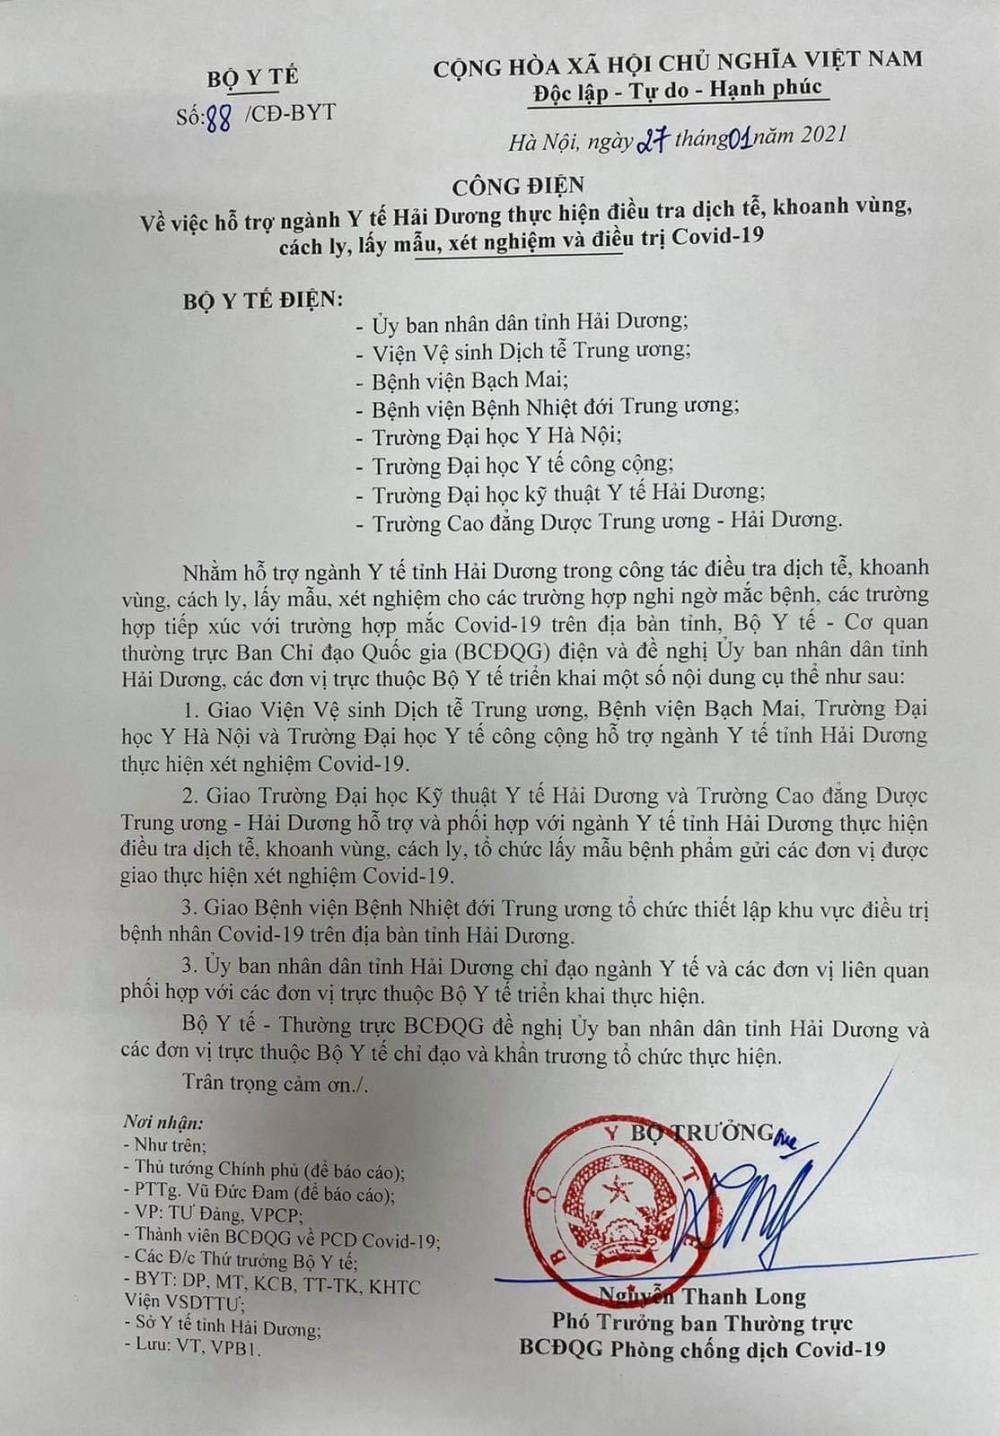 Covid-19 sáng 28/1 tại Việt Nam: Phát hiện 2 ca lây nhiễm trong cộng đồng ở Hải Dương và Quảng Ninh